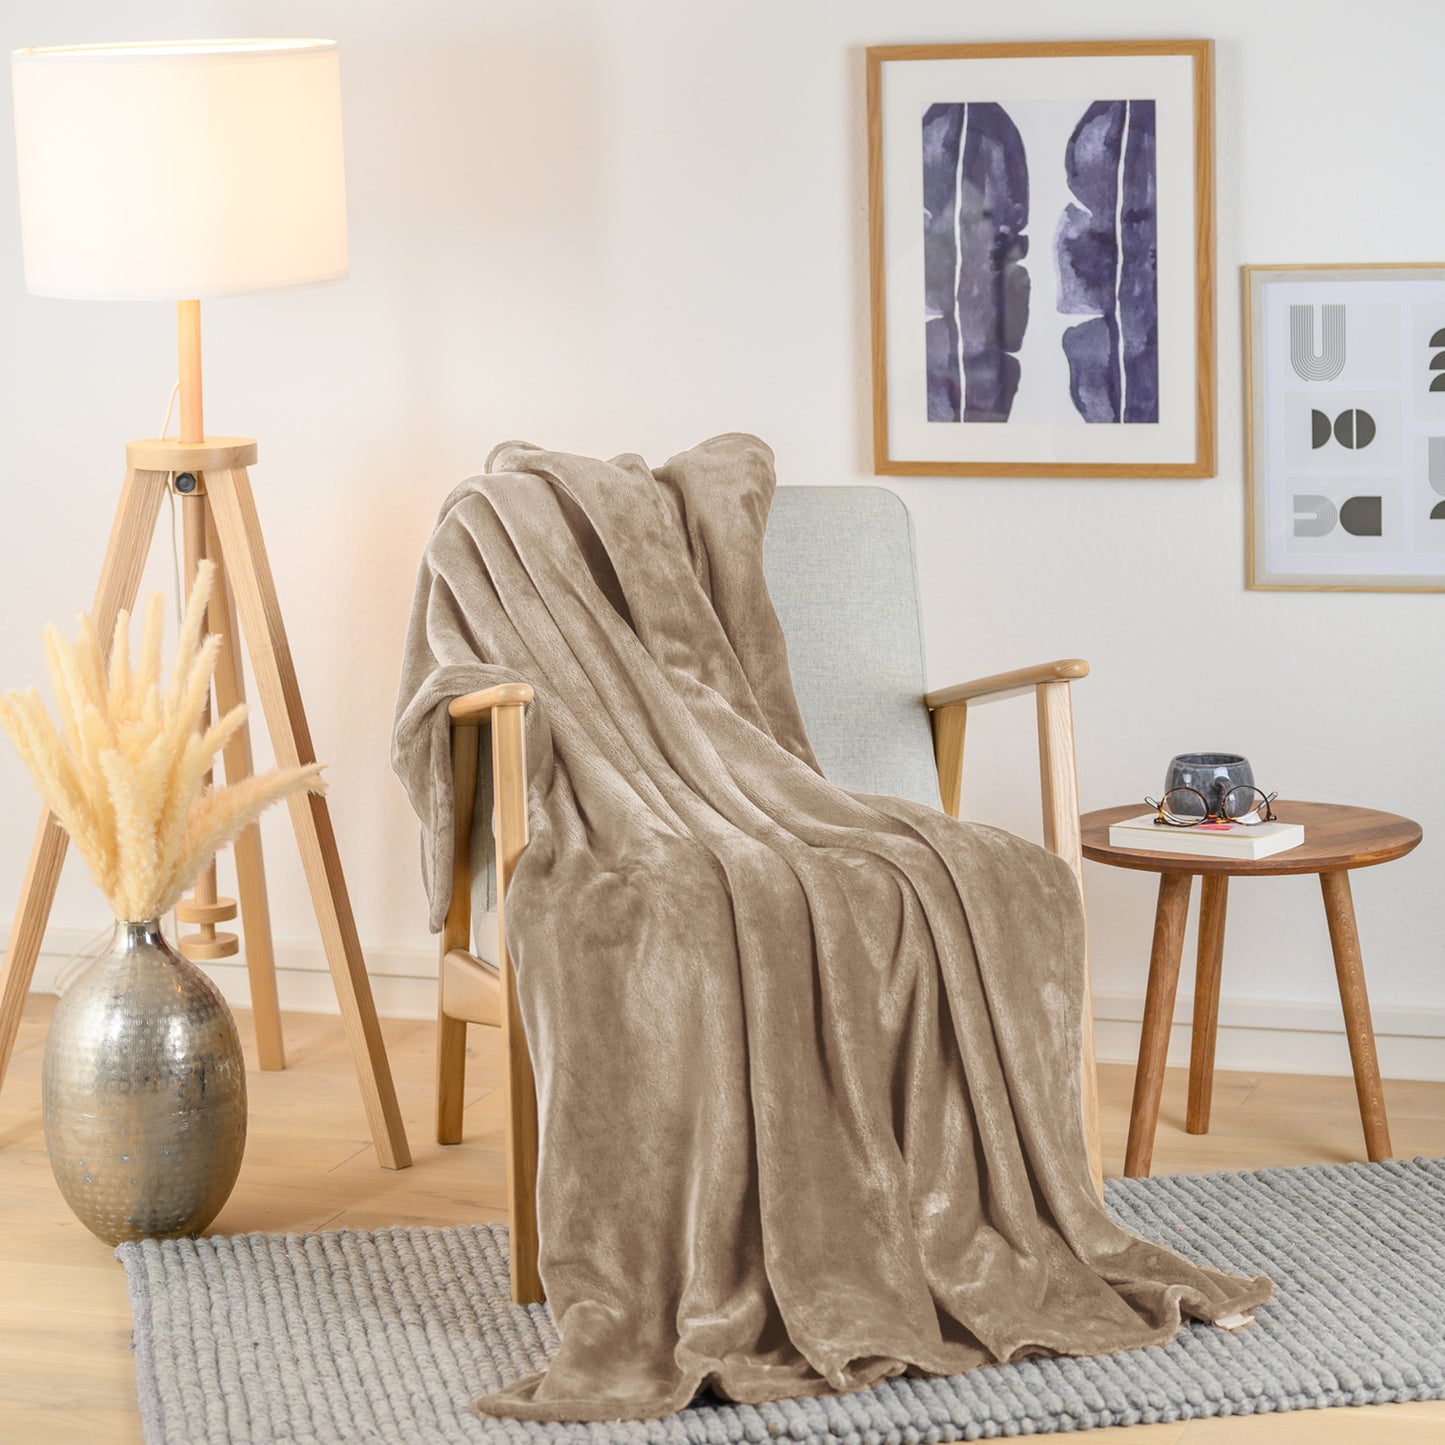 Olivgrüne Fleece-Kuscheldecke, stilvoll über einen Sessel in einem Wohnraum drapiert, mit einer Vase und Pflanzendekoration im Hintergrund.